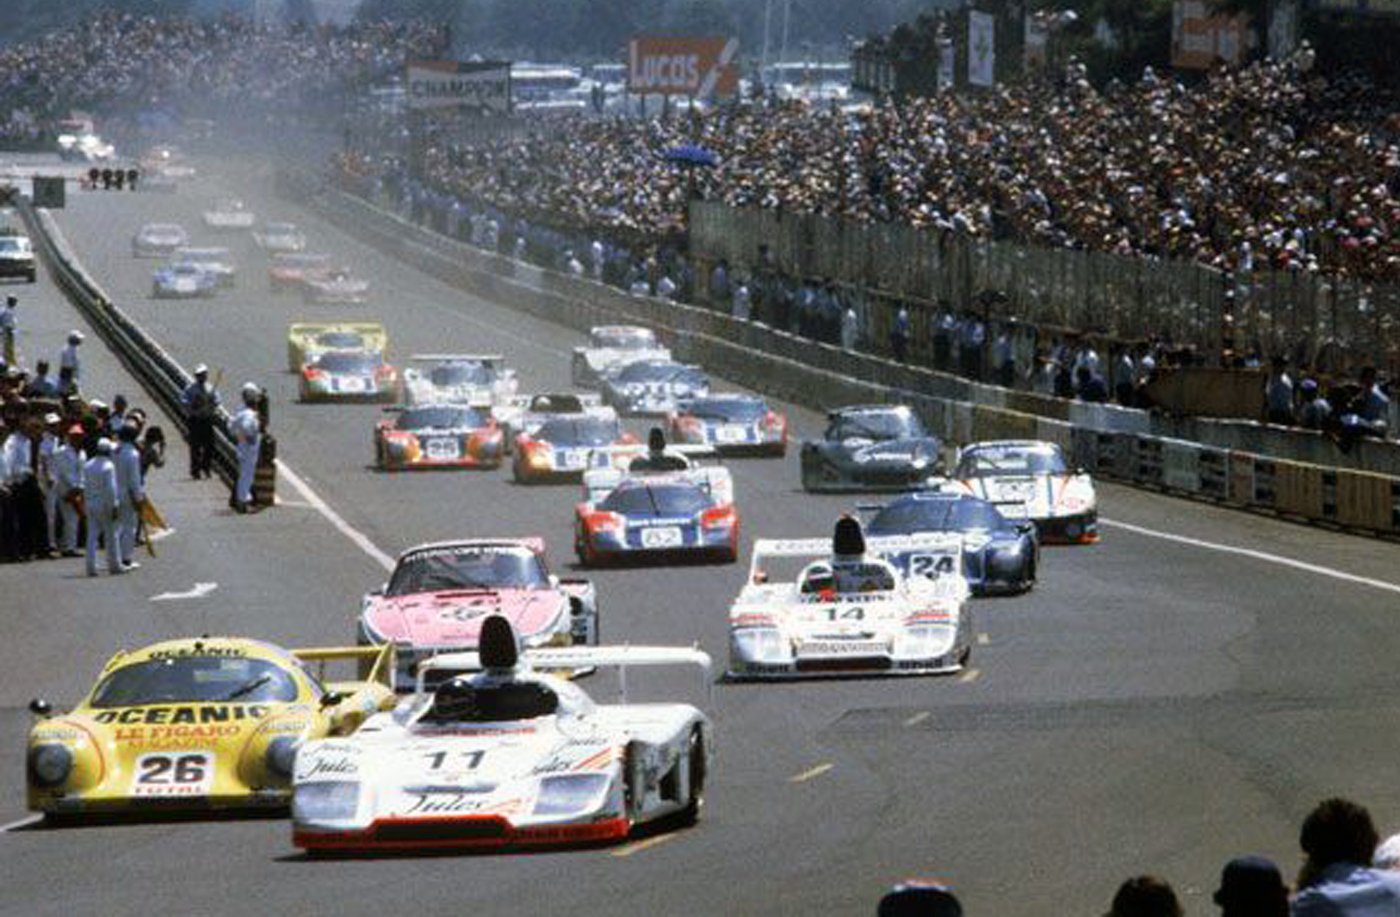 lemans 1981 race start.jpg